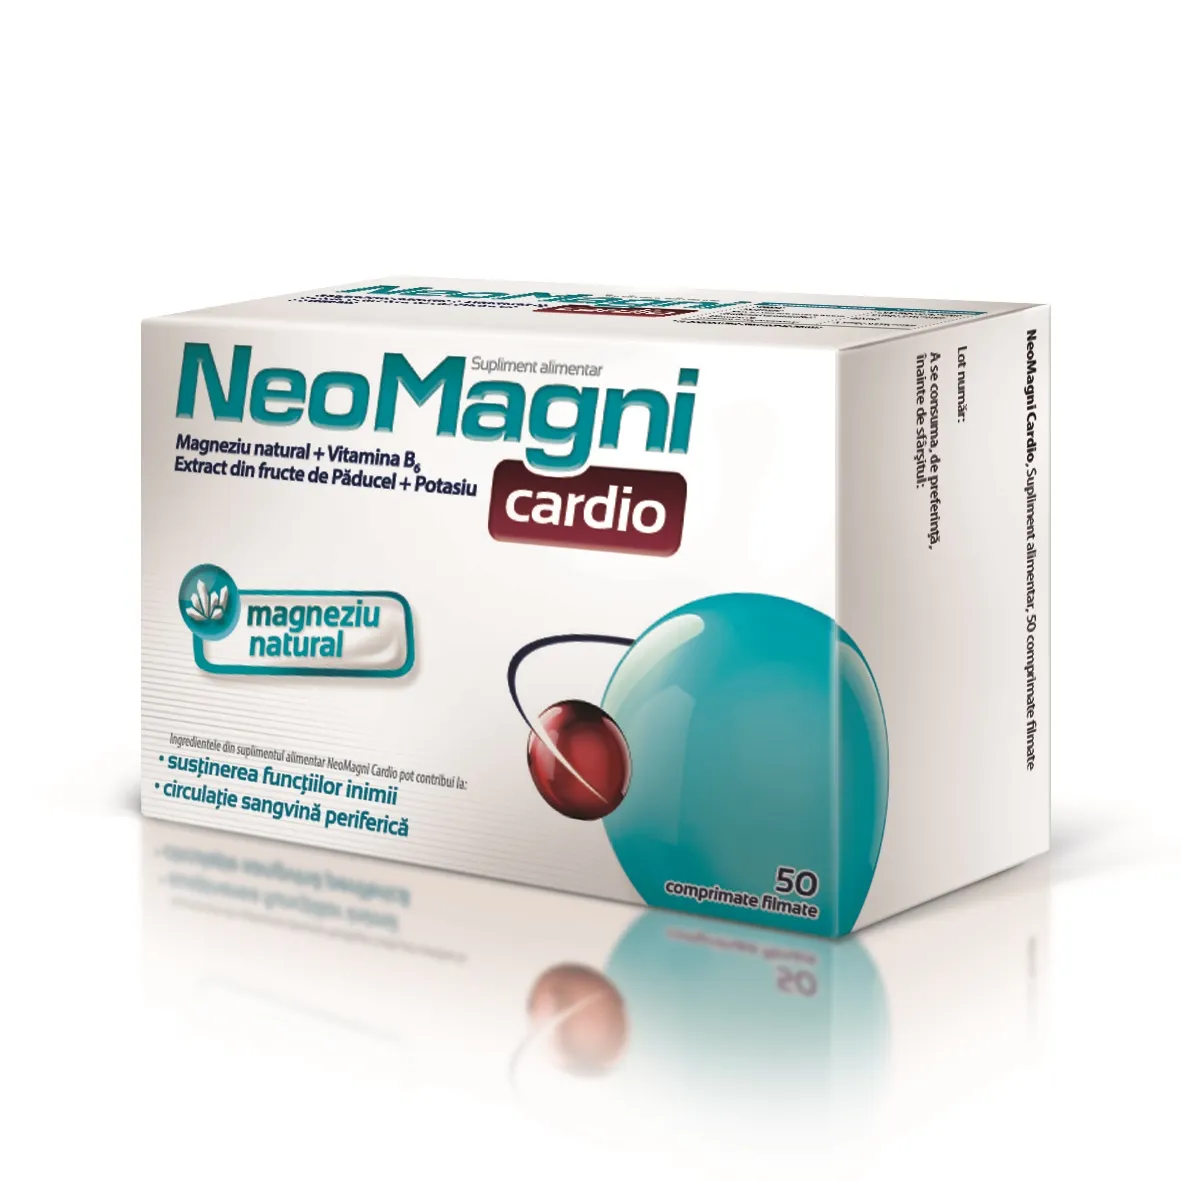 NeoMagni Cardio x 50cpr